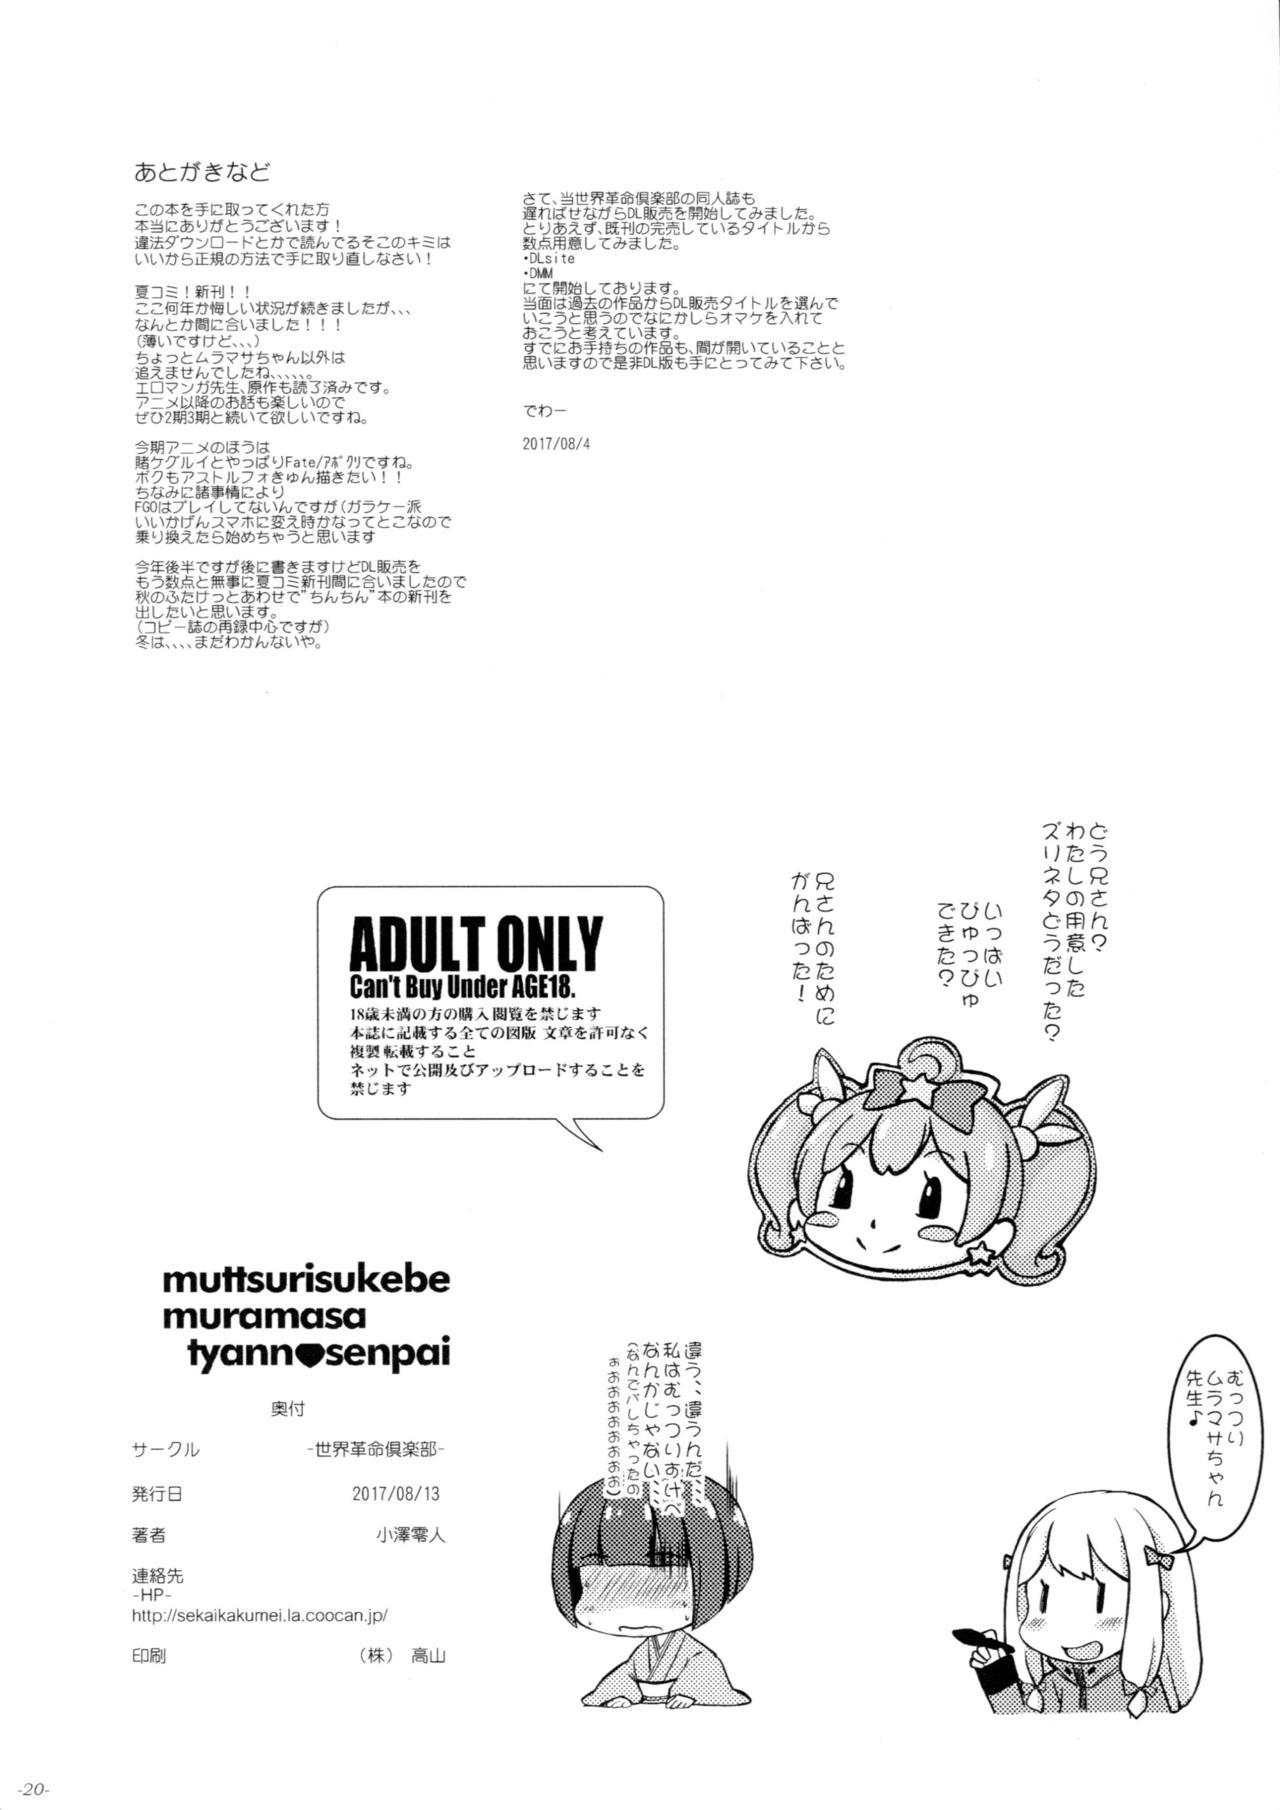 European Muttsuri Muramasa-chan Senpai - Eromanga sensei Cowgirl - Page 21